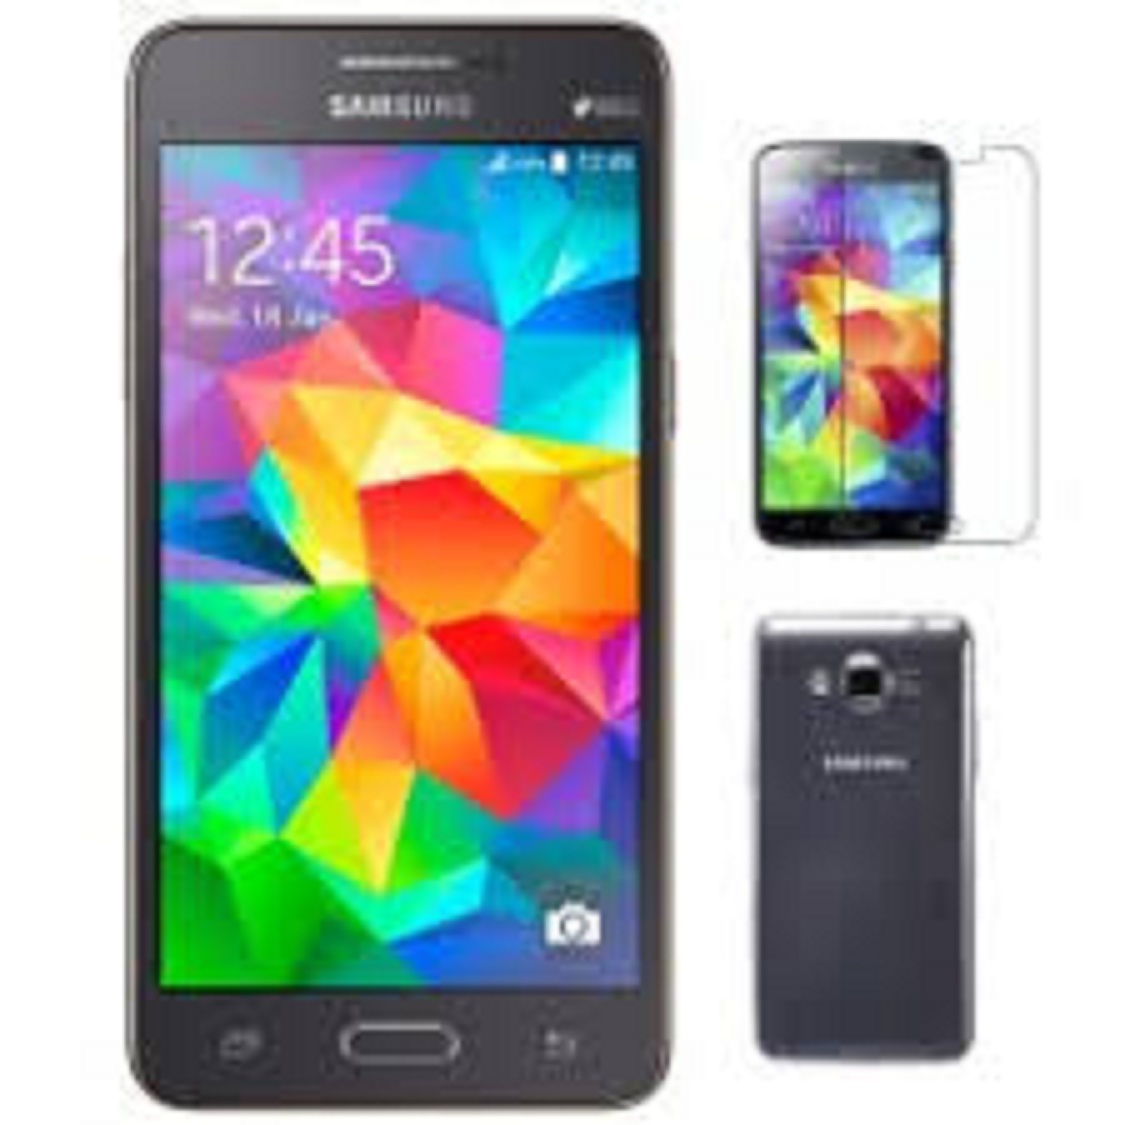 điện thoại Chữa Cháy làm máy phụ Samsung G530 - điện thoại Cảm ứng Samsung Galaxy Grand Prime G530 2sim Máy Chính Hãng, Cảm ứng mượt, nghe gọi tốt, FB Youtube chất - TTN 01